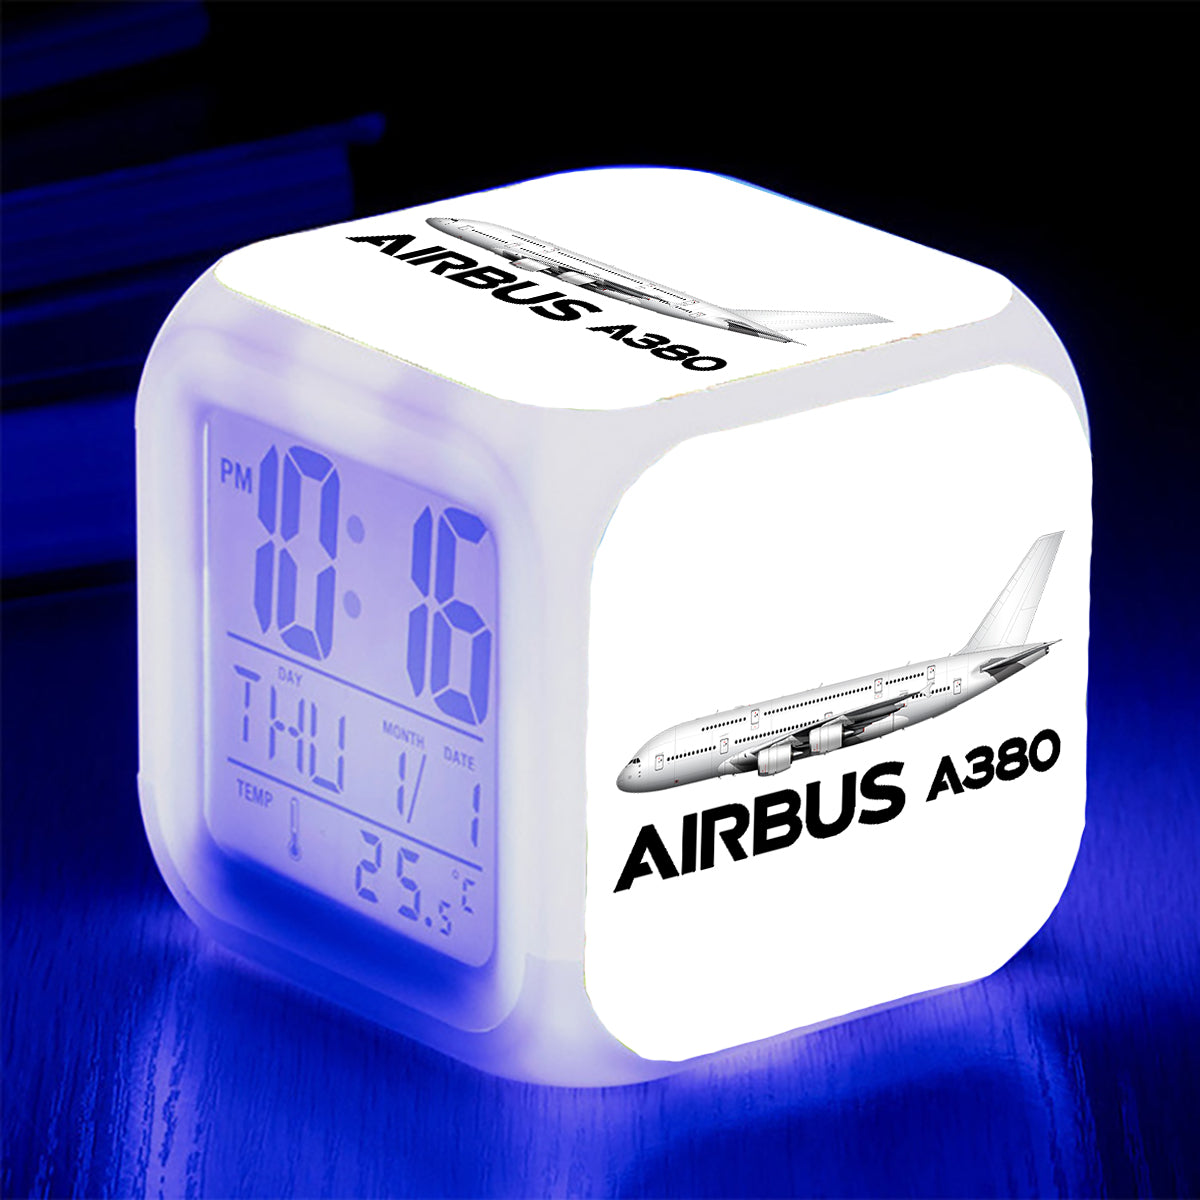 The Airbus A380 Designed "7 Colour" Digital Alarm Clock